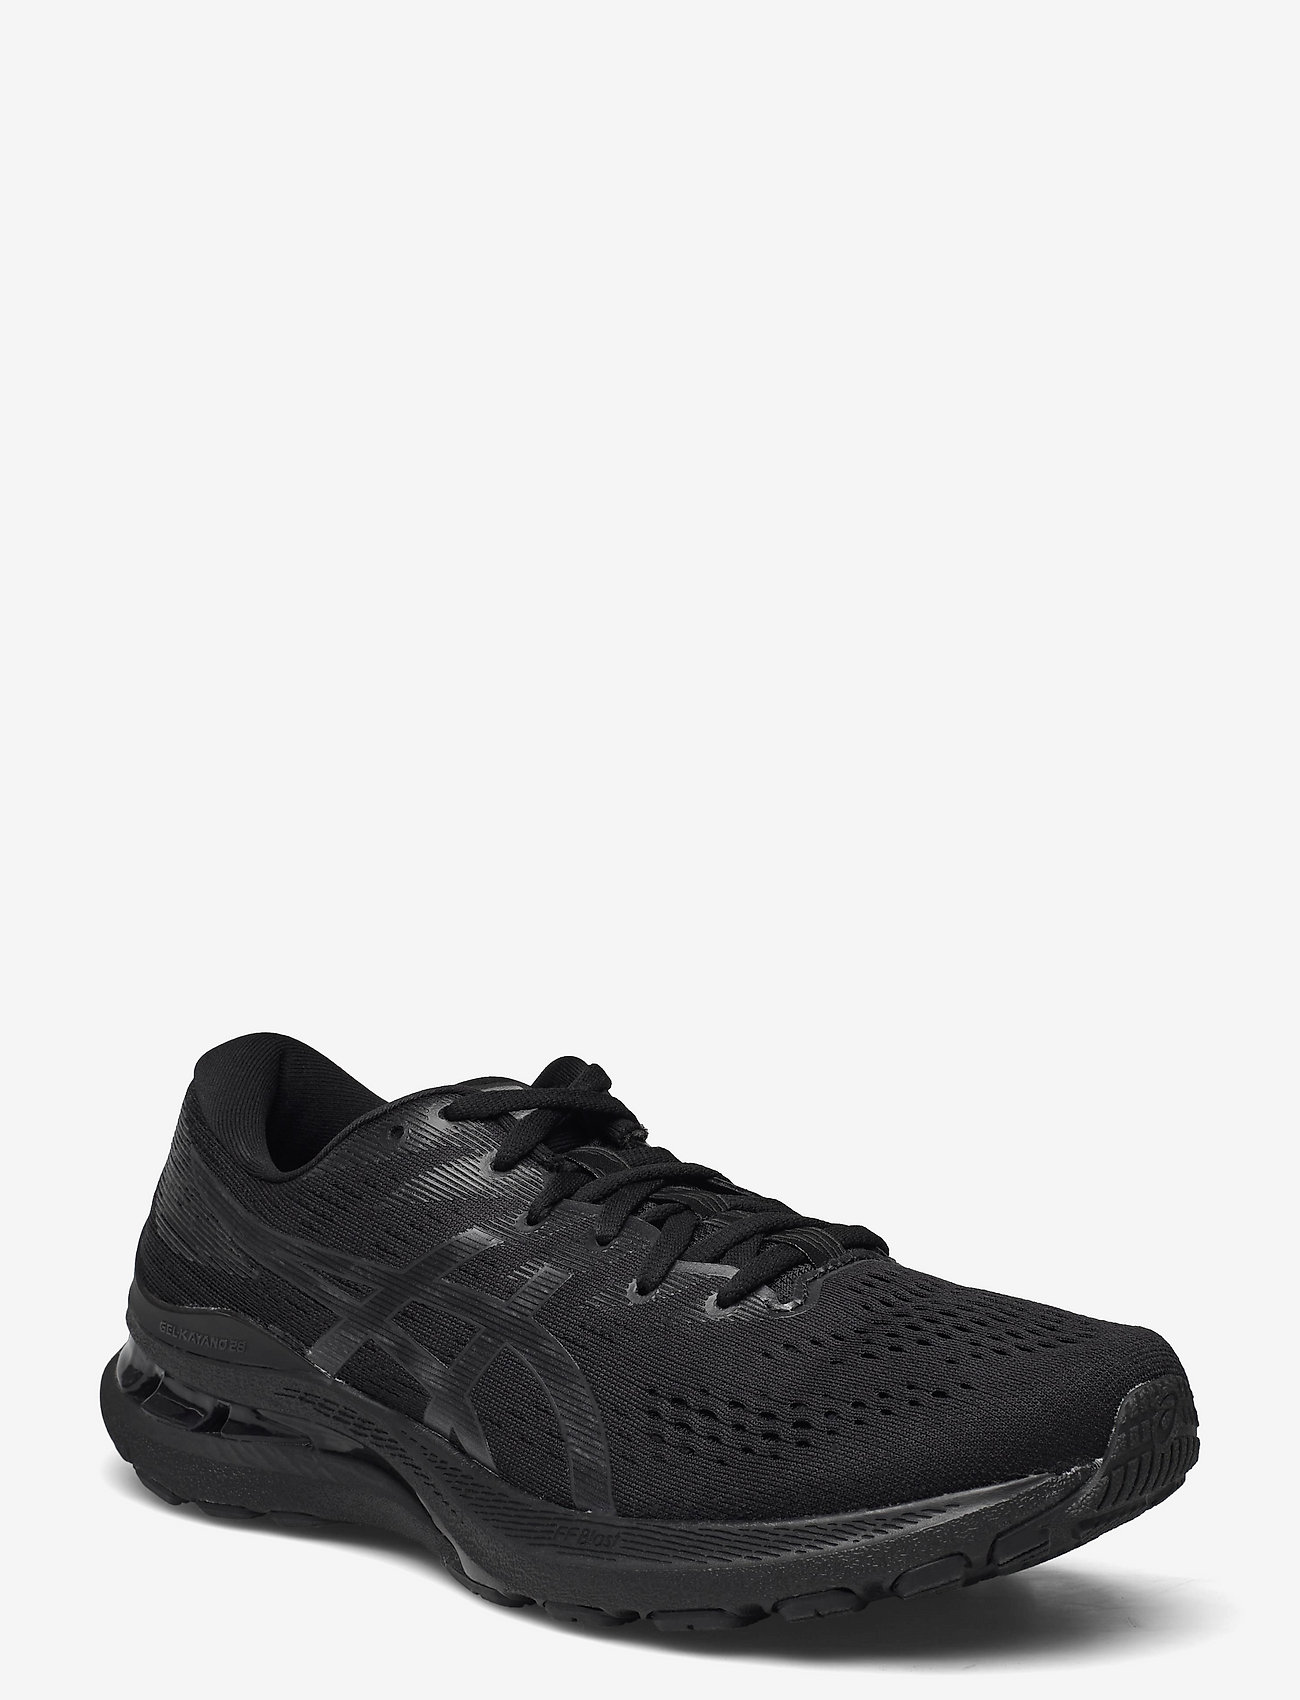 Asics - GEL-KAYANO 28 - running shoes - black/graphite grey - 0